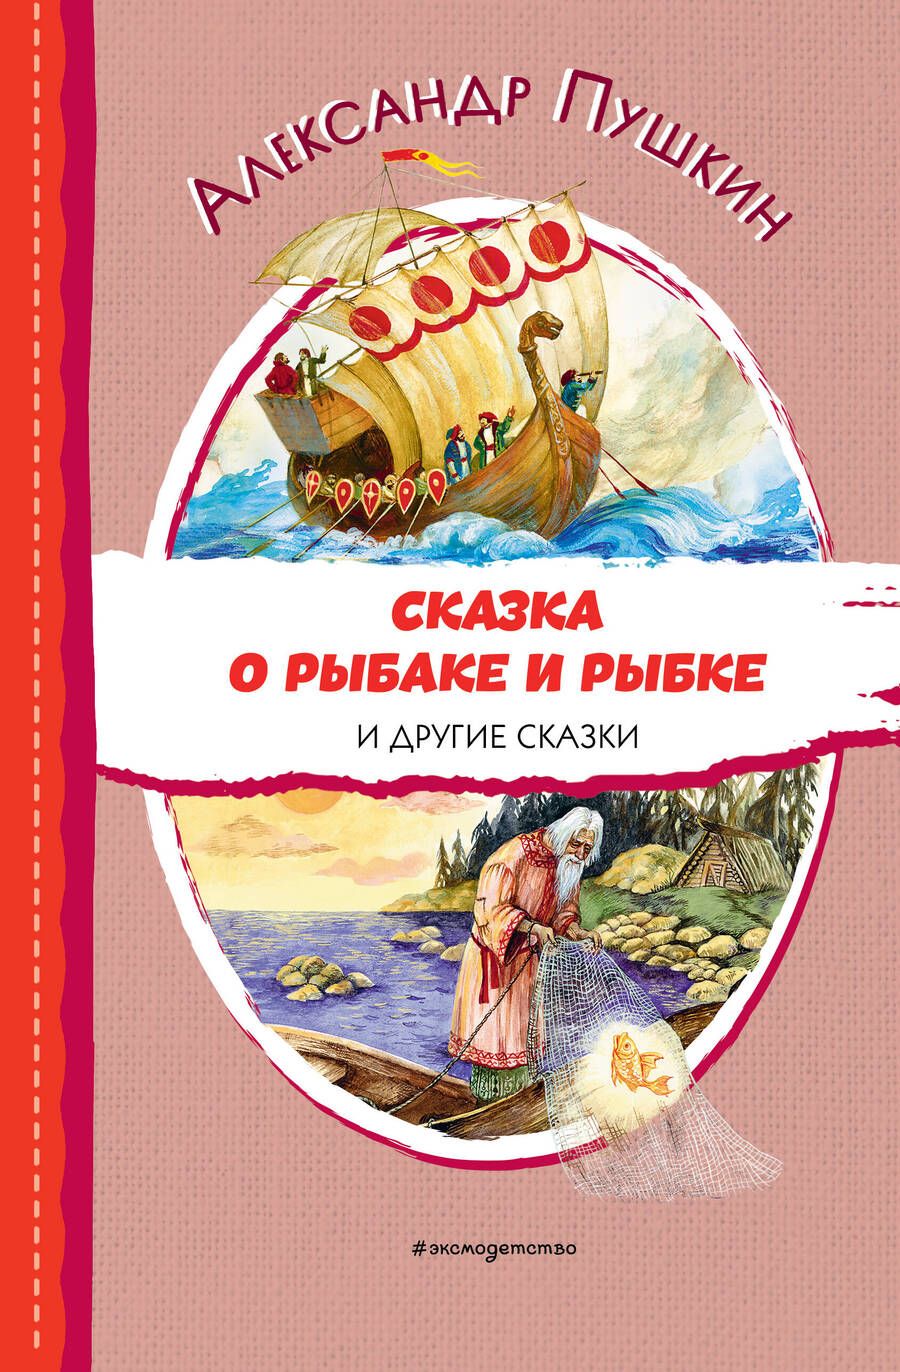 Обложка книги "Пушкин: Сказка о рыбаке и рыбке и другие сказки"